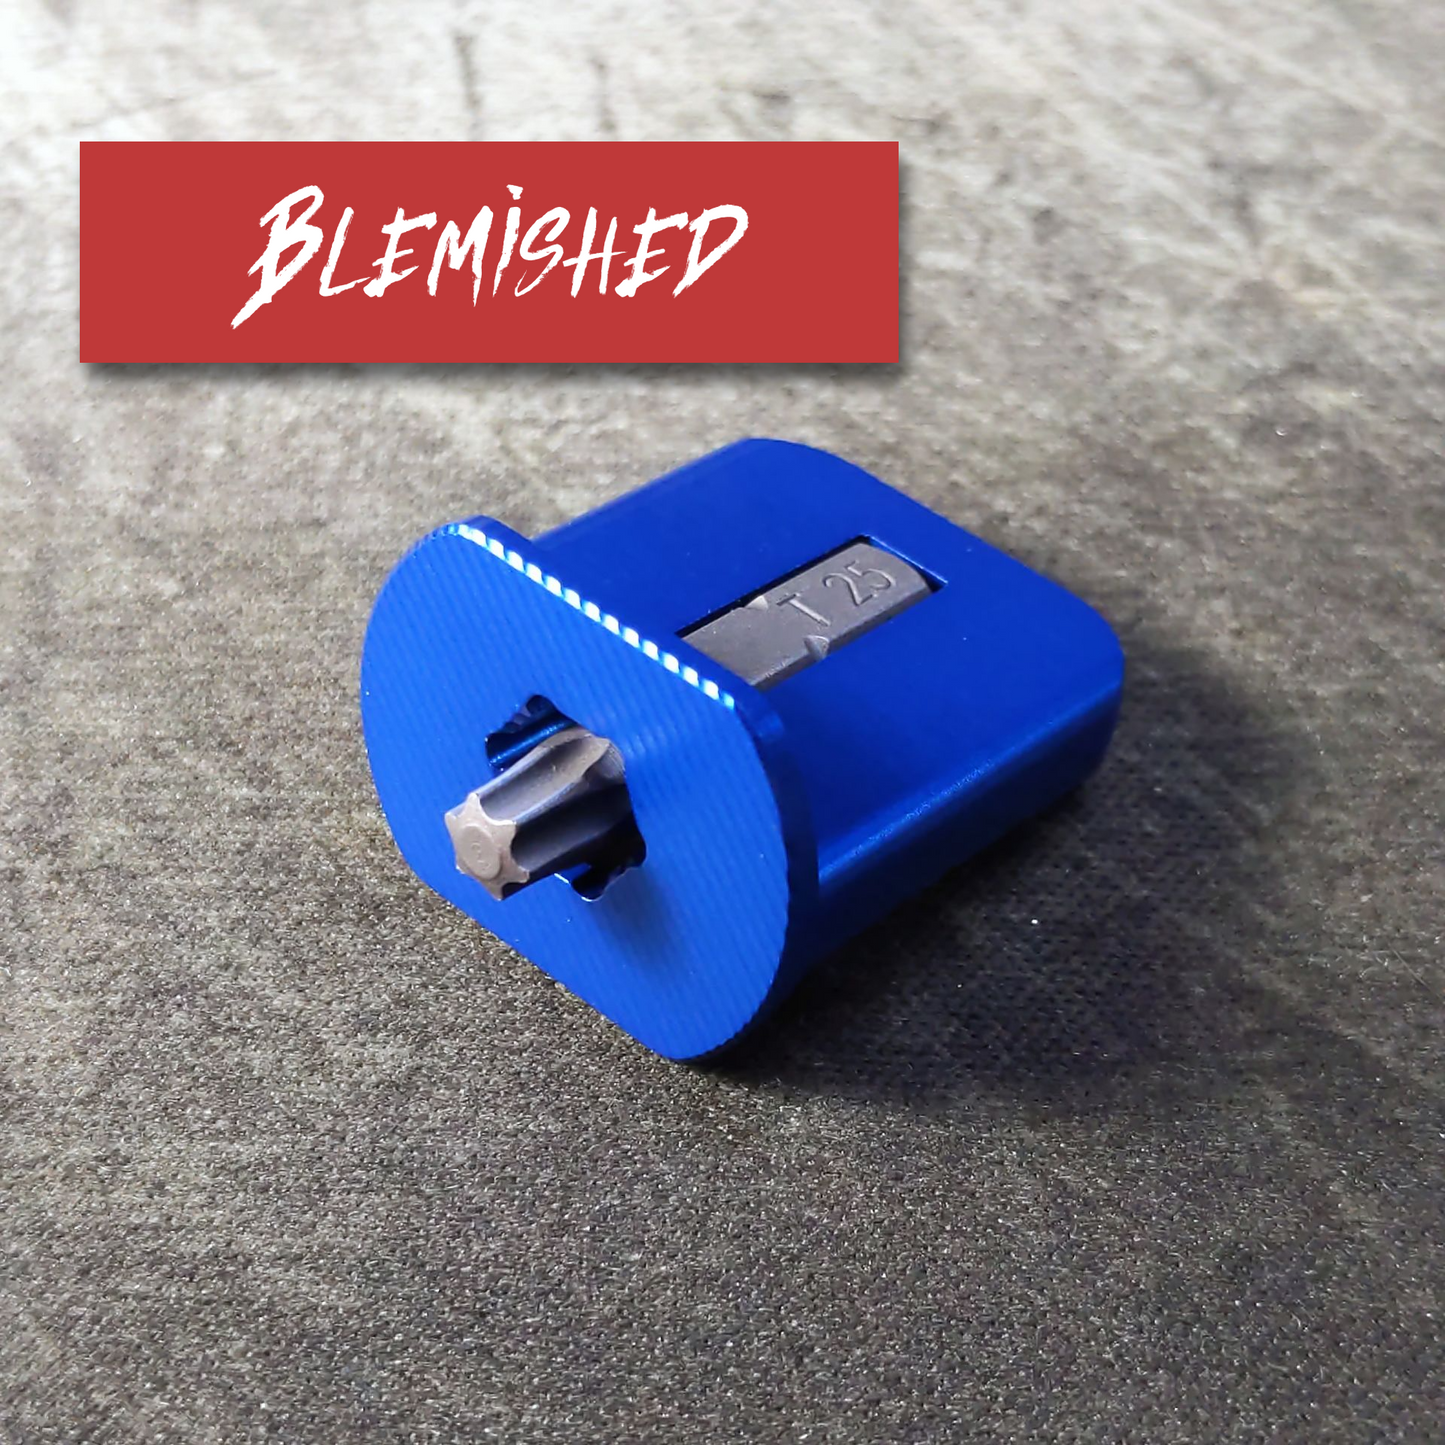 Blemished - FingerBit - Aluminum - Anodized Blue (1 Pack)